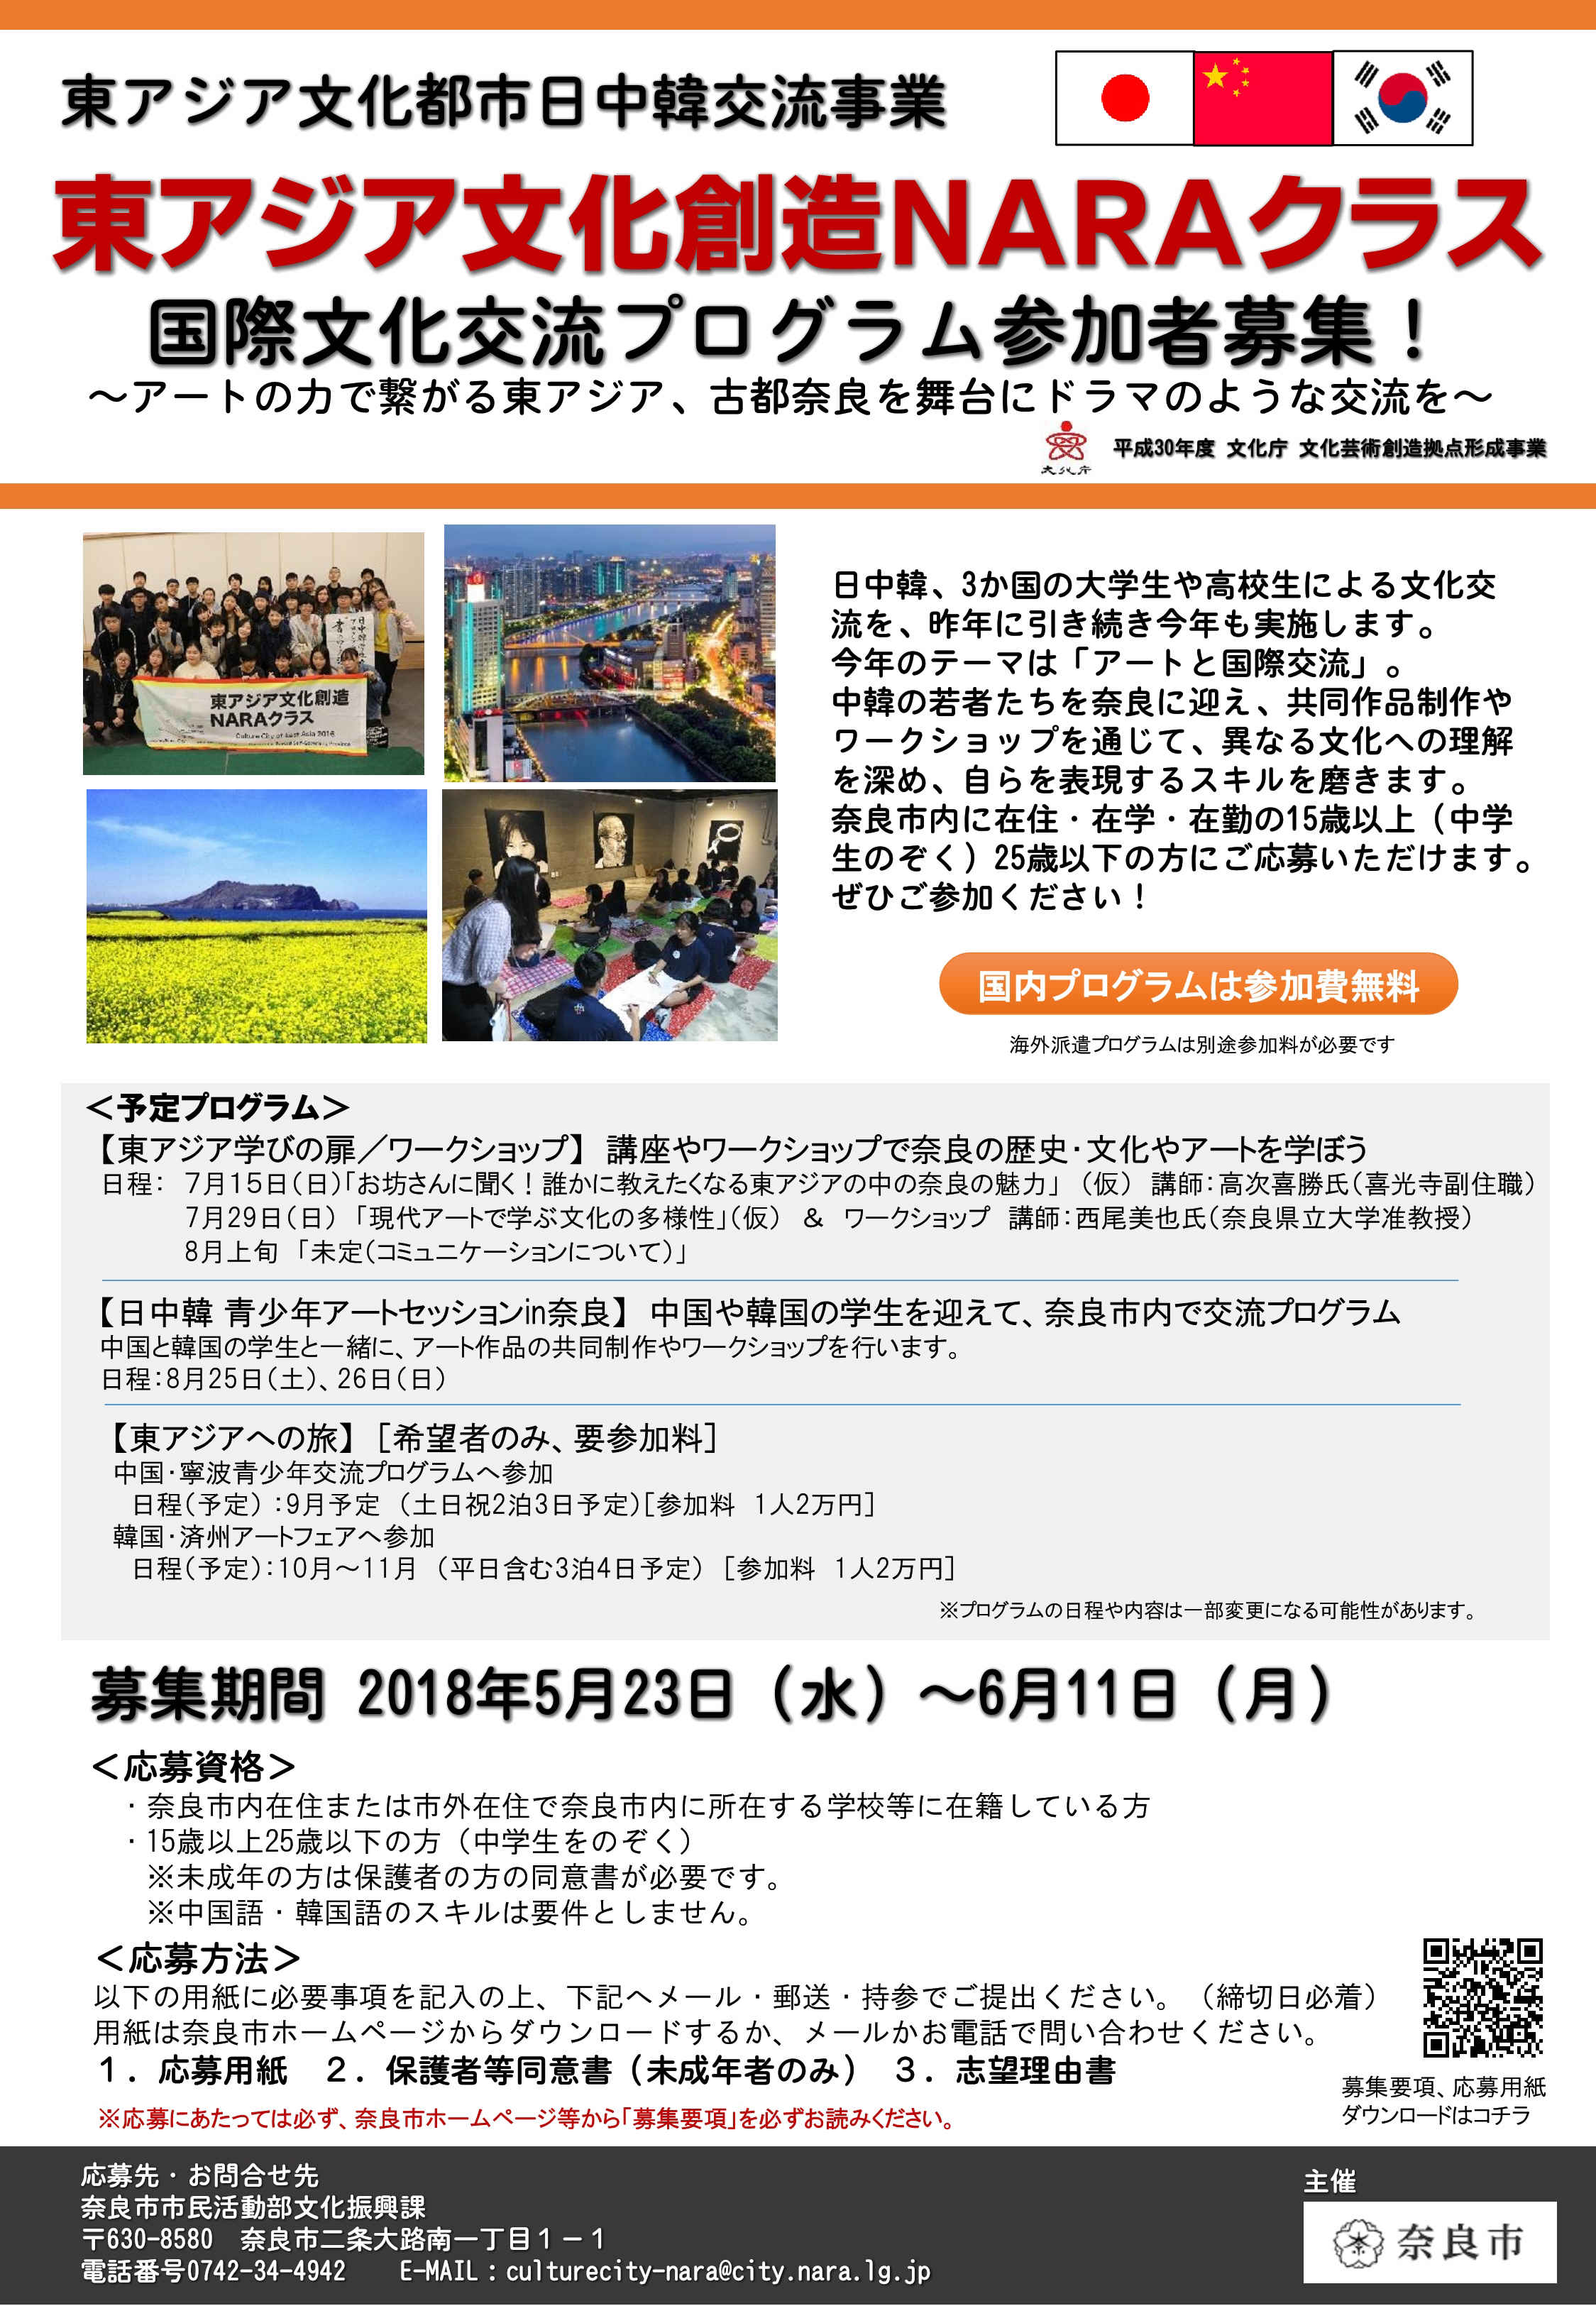 国際文化交流プログラム「東アジア文化創造NARAクラス」平成30年度参加者募集について(平成30年5月28日発表)の画像